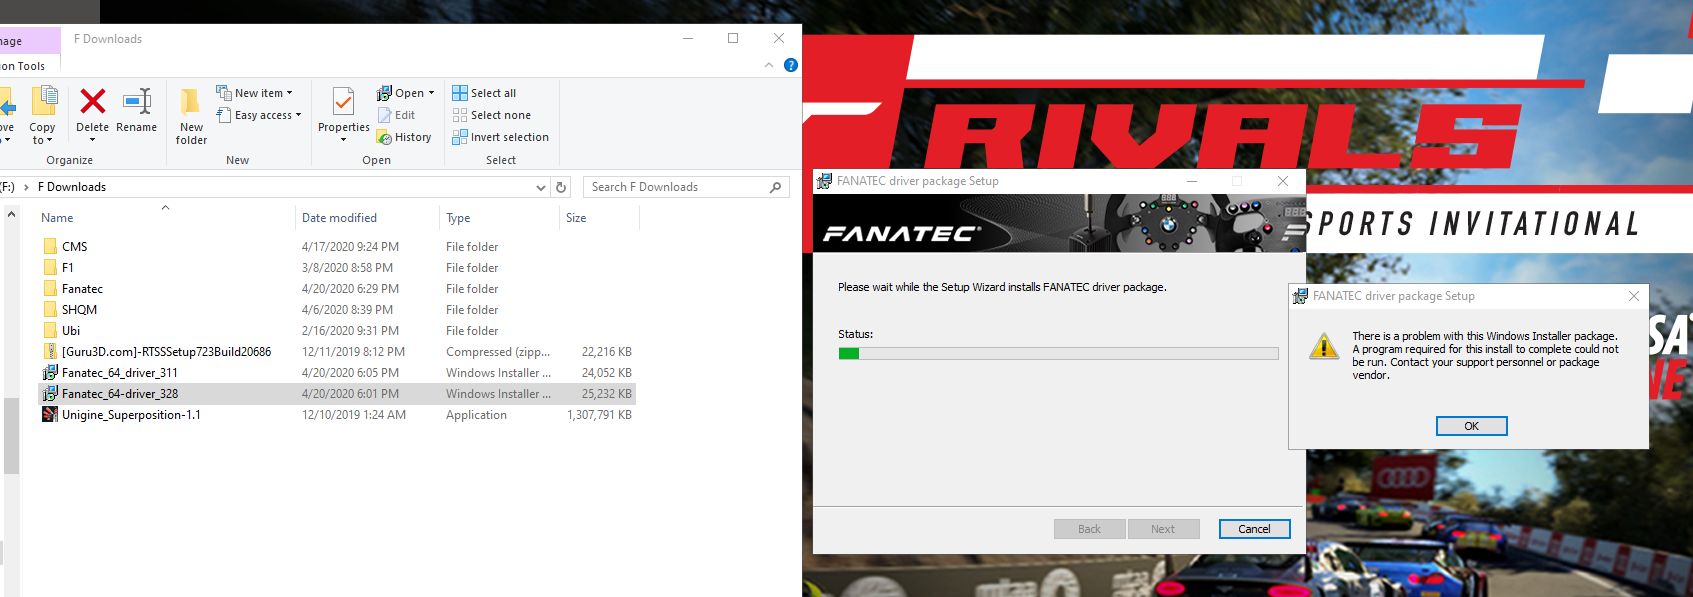 Fanatec Drivers Install Problem 38048e17-d1b7-41d8-8281-34cb8c12948e?upload=true.png